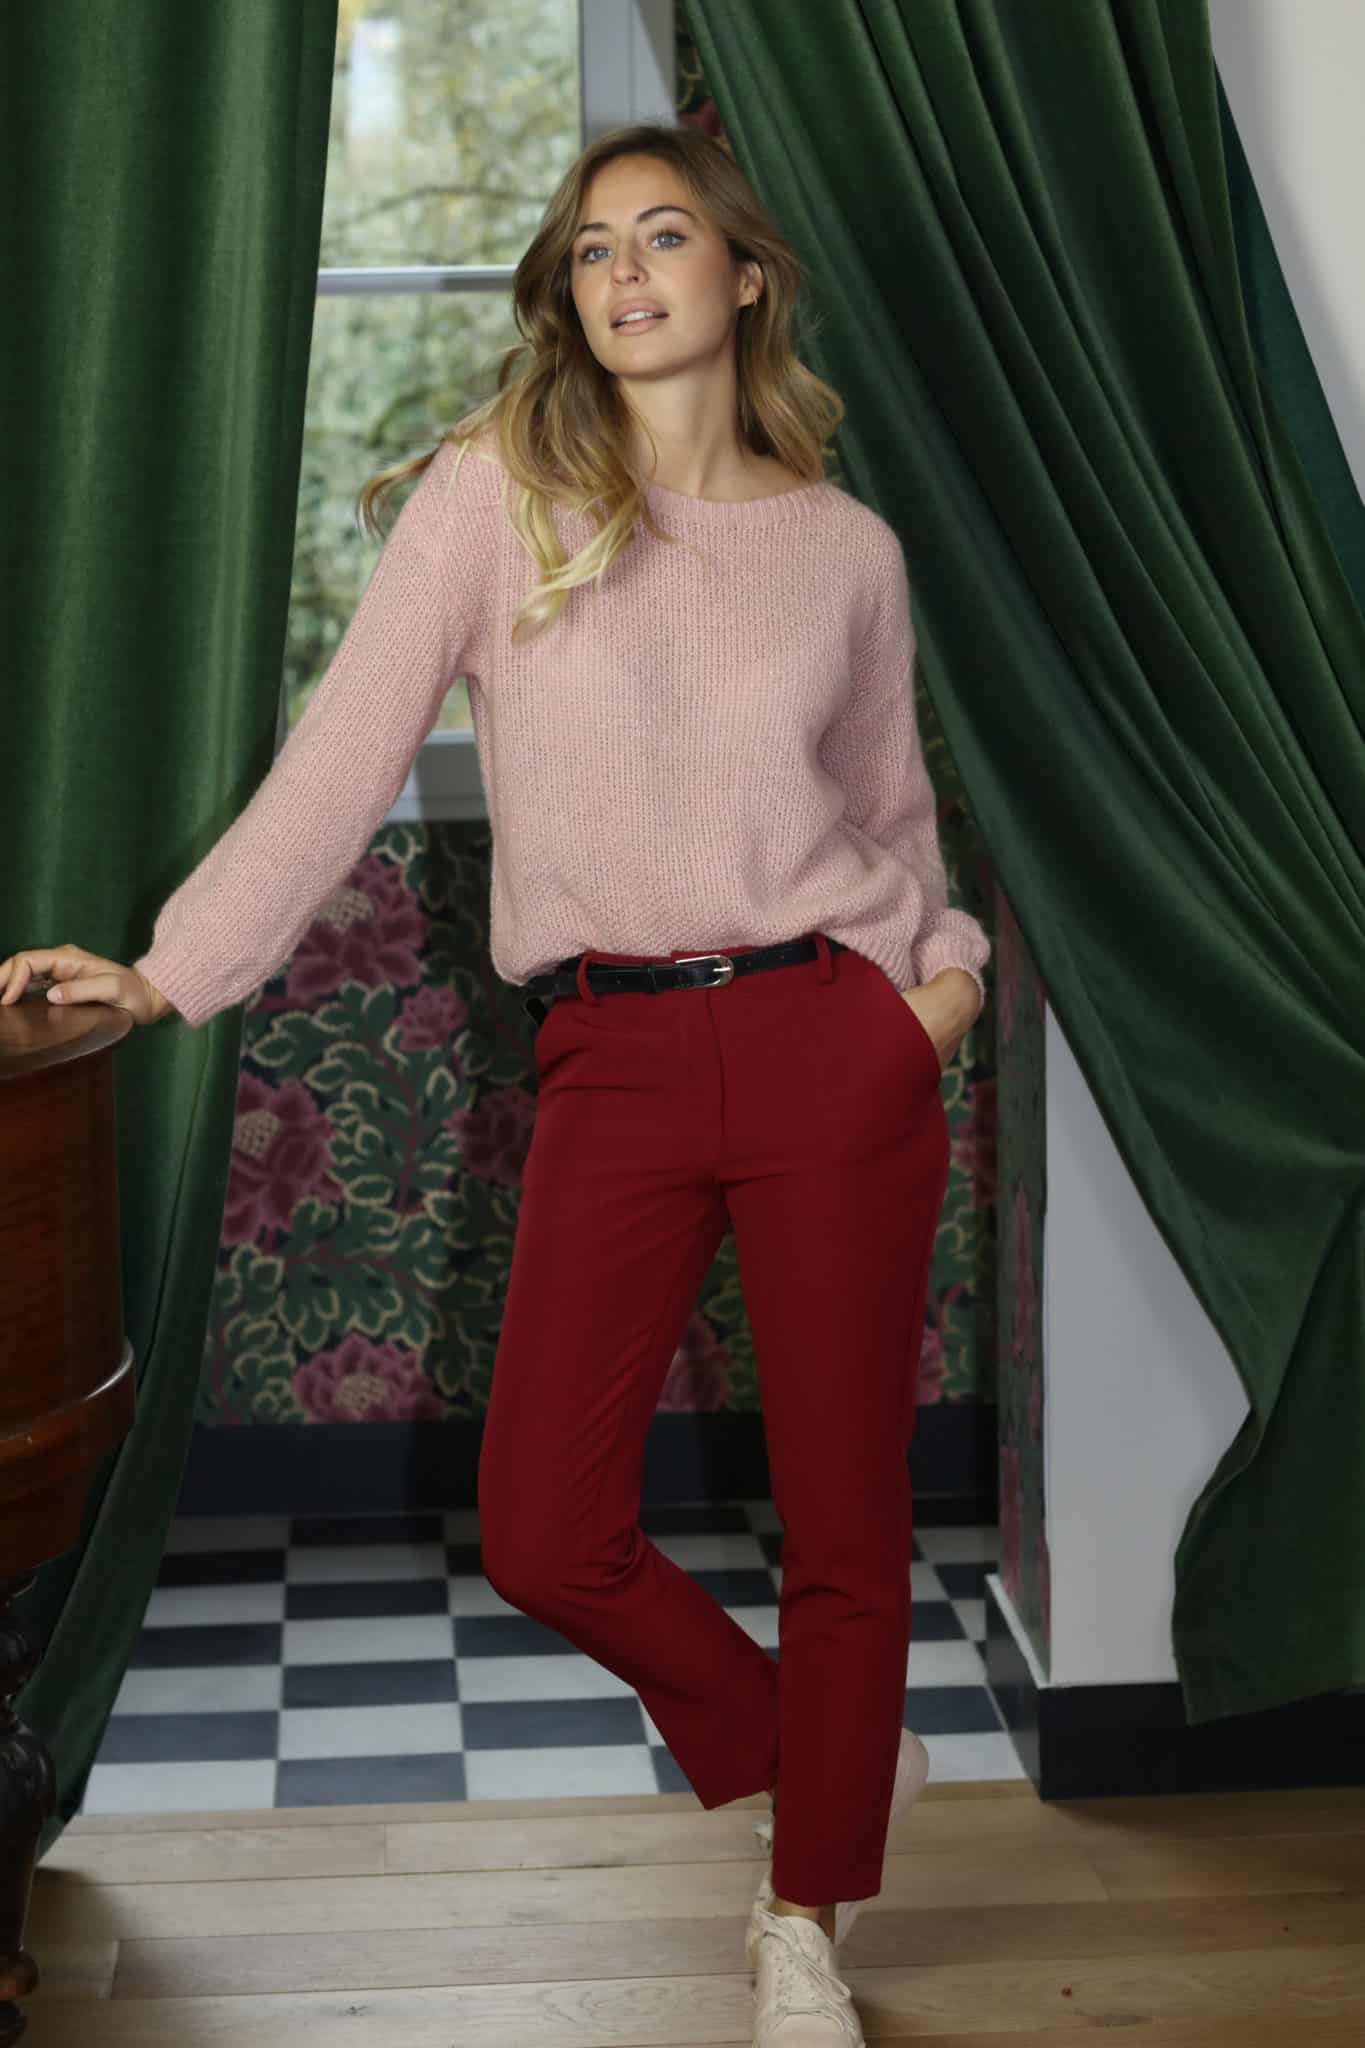 pantalon tailleur taille basse rouge bordeaux avec pull en laine rose pale plein pied 4